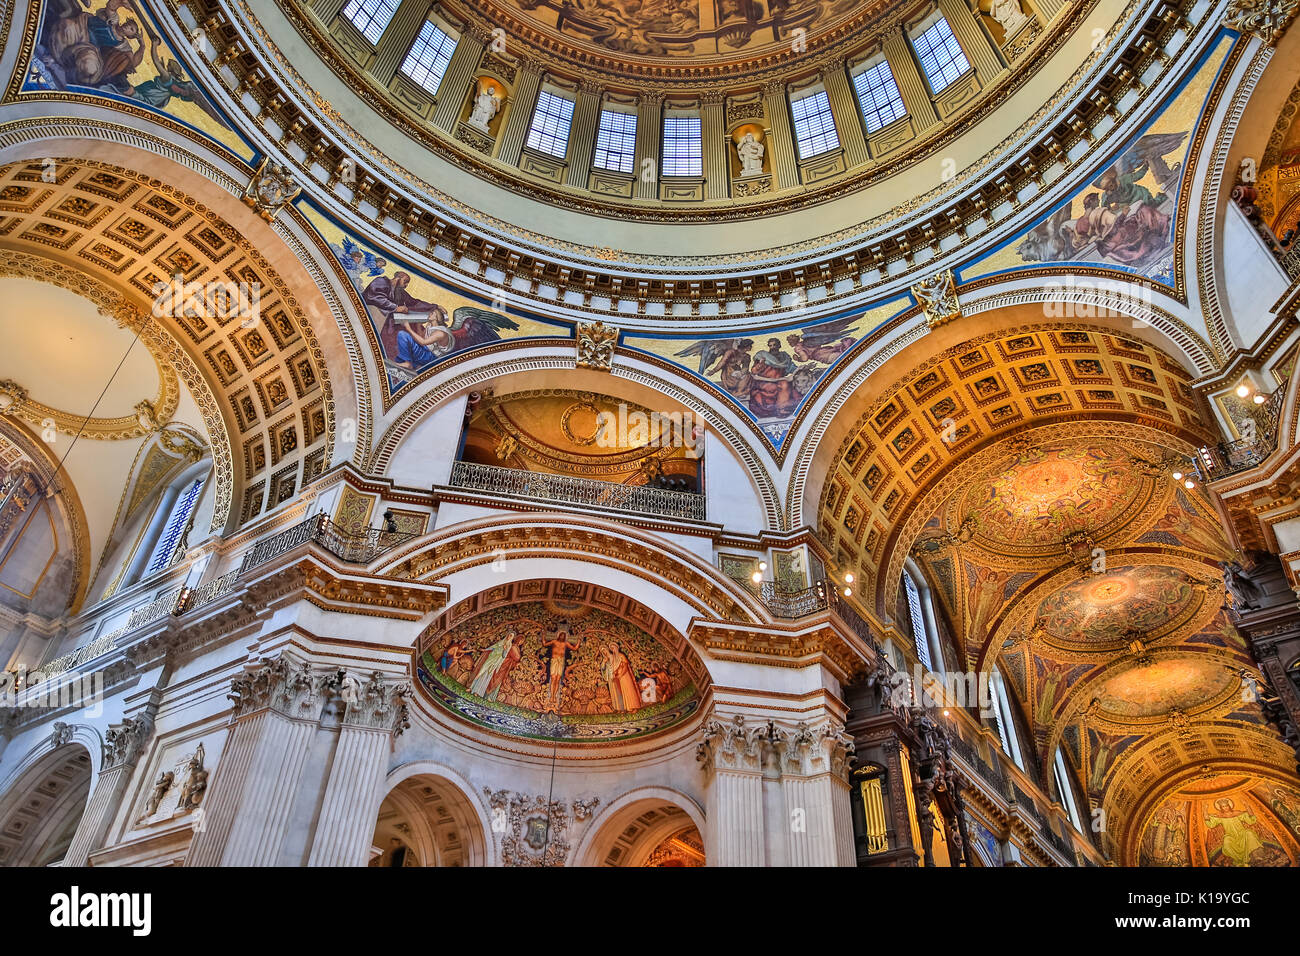 Die St Paul's Kathedrale, bis zur Decke und Wand Malereien, Schnitzereien und vergoldeten Dekorationen der Innenkuppel, London UK Stockfoto